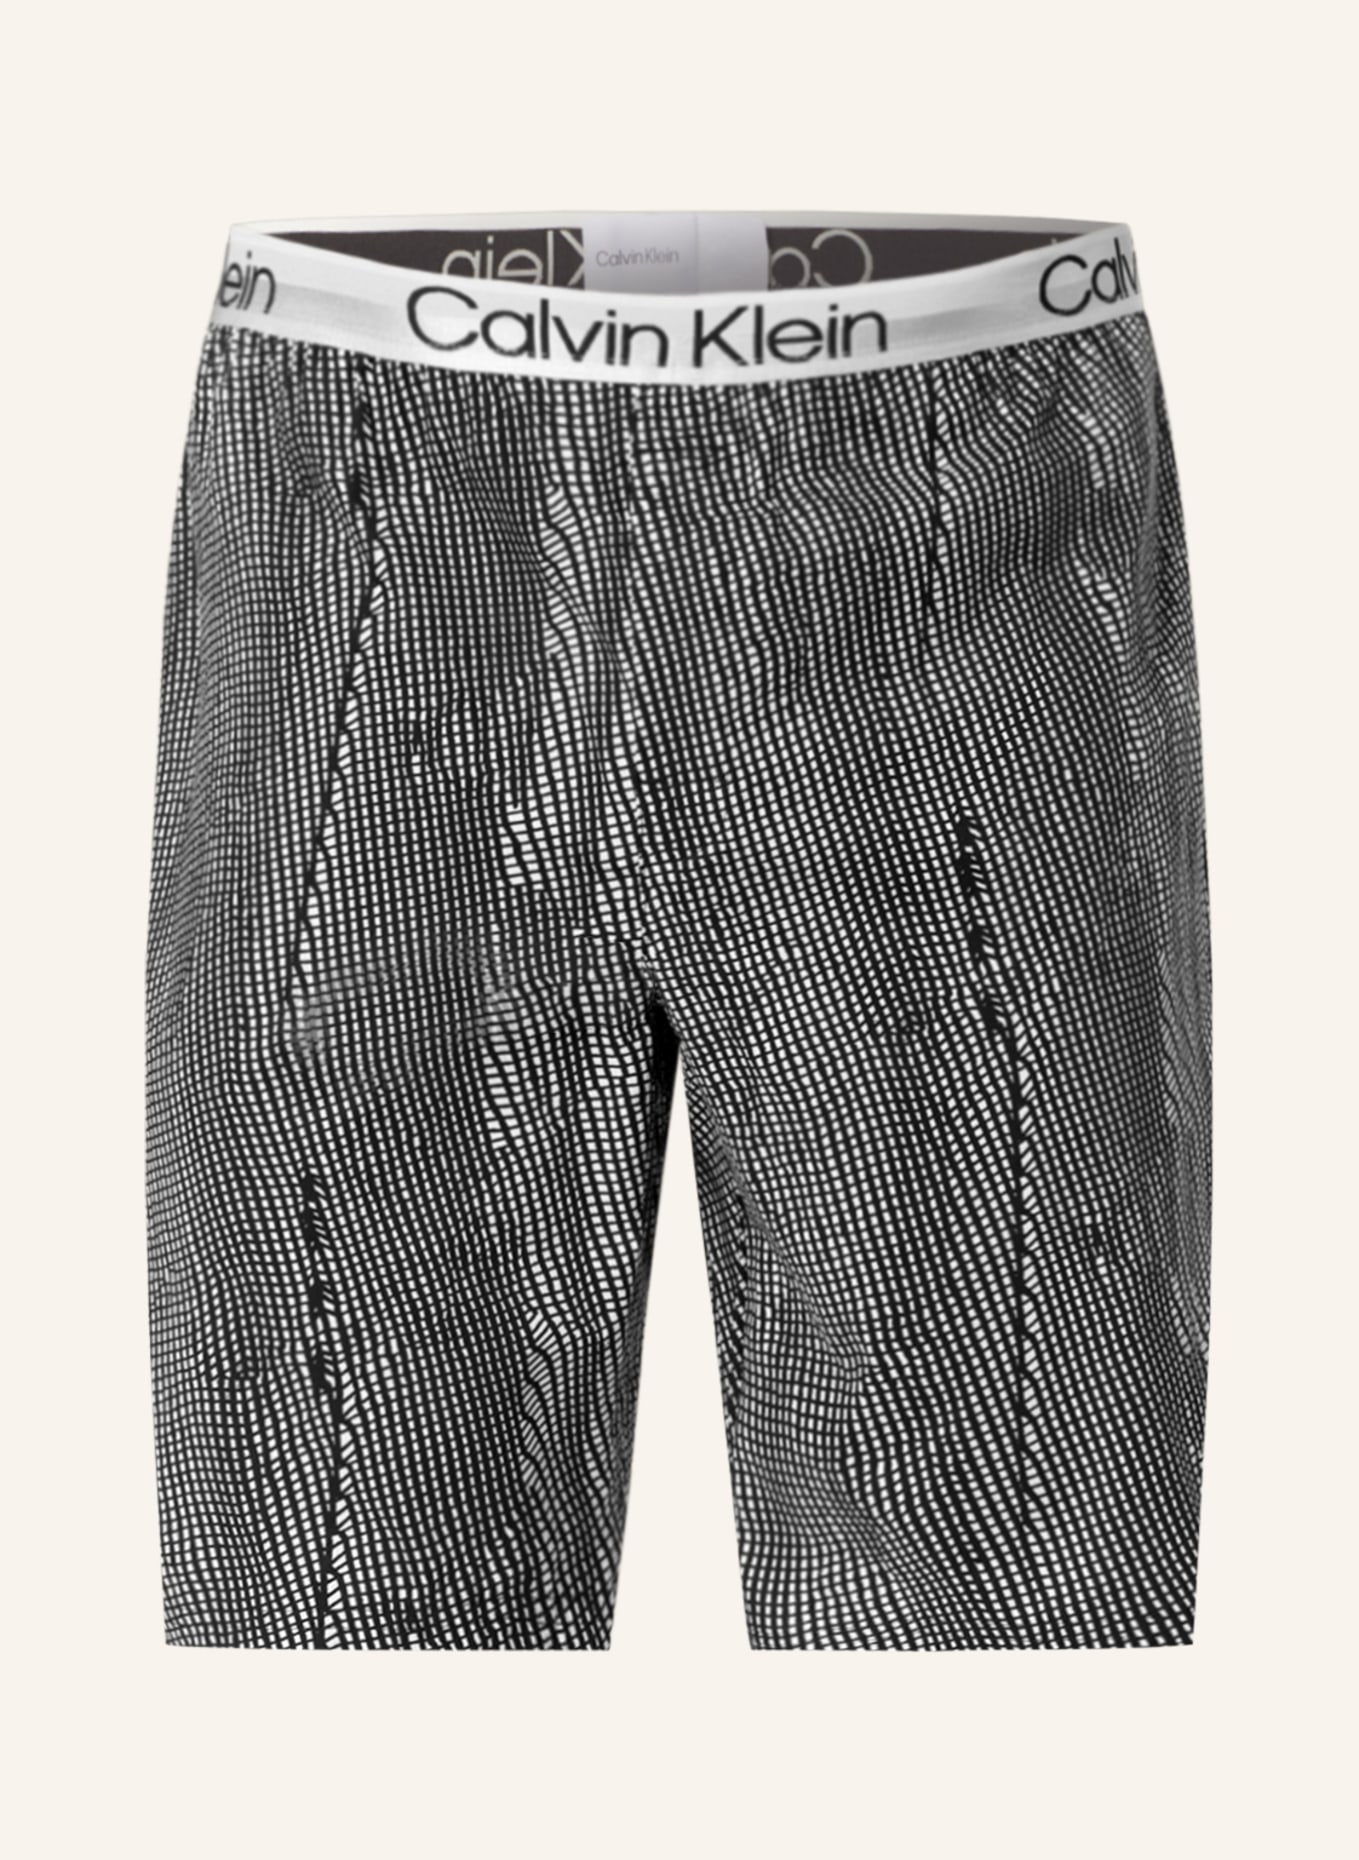 Calvin Klein Schlafshorts MODERN STRUCTURE, Farbe: HELLGRAU/ SCHWARZ (Bild 1)